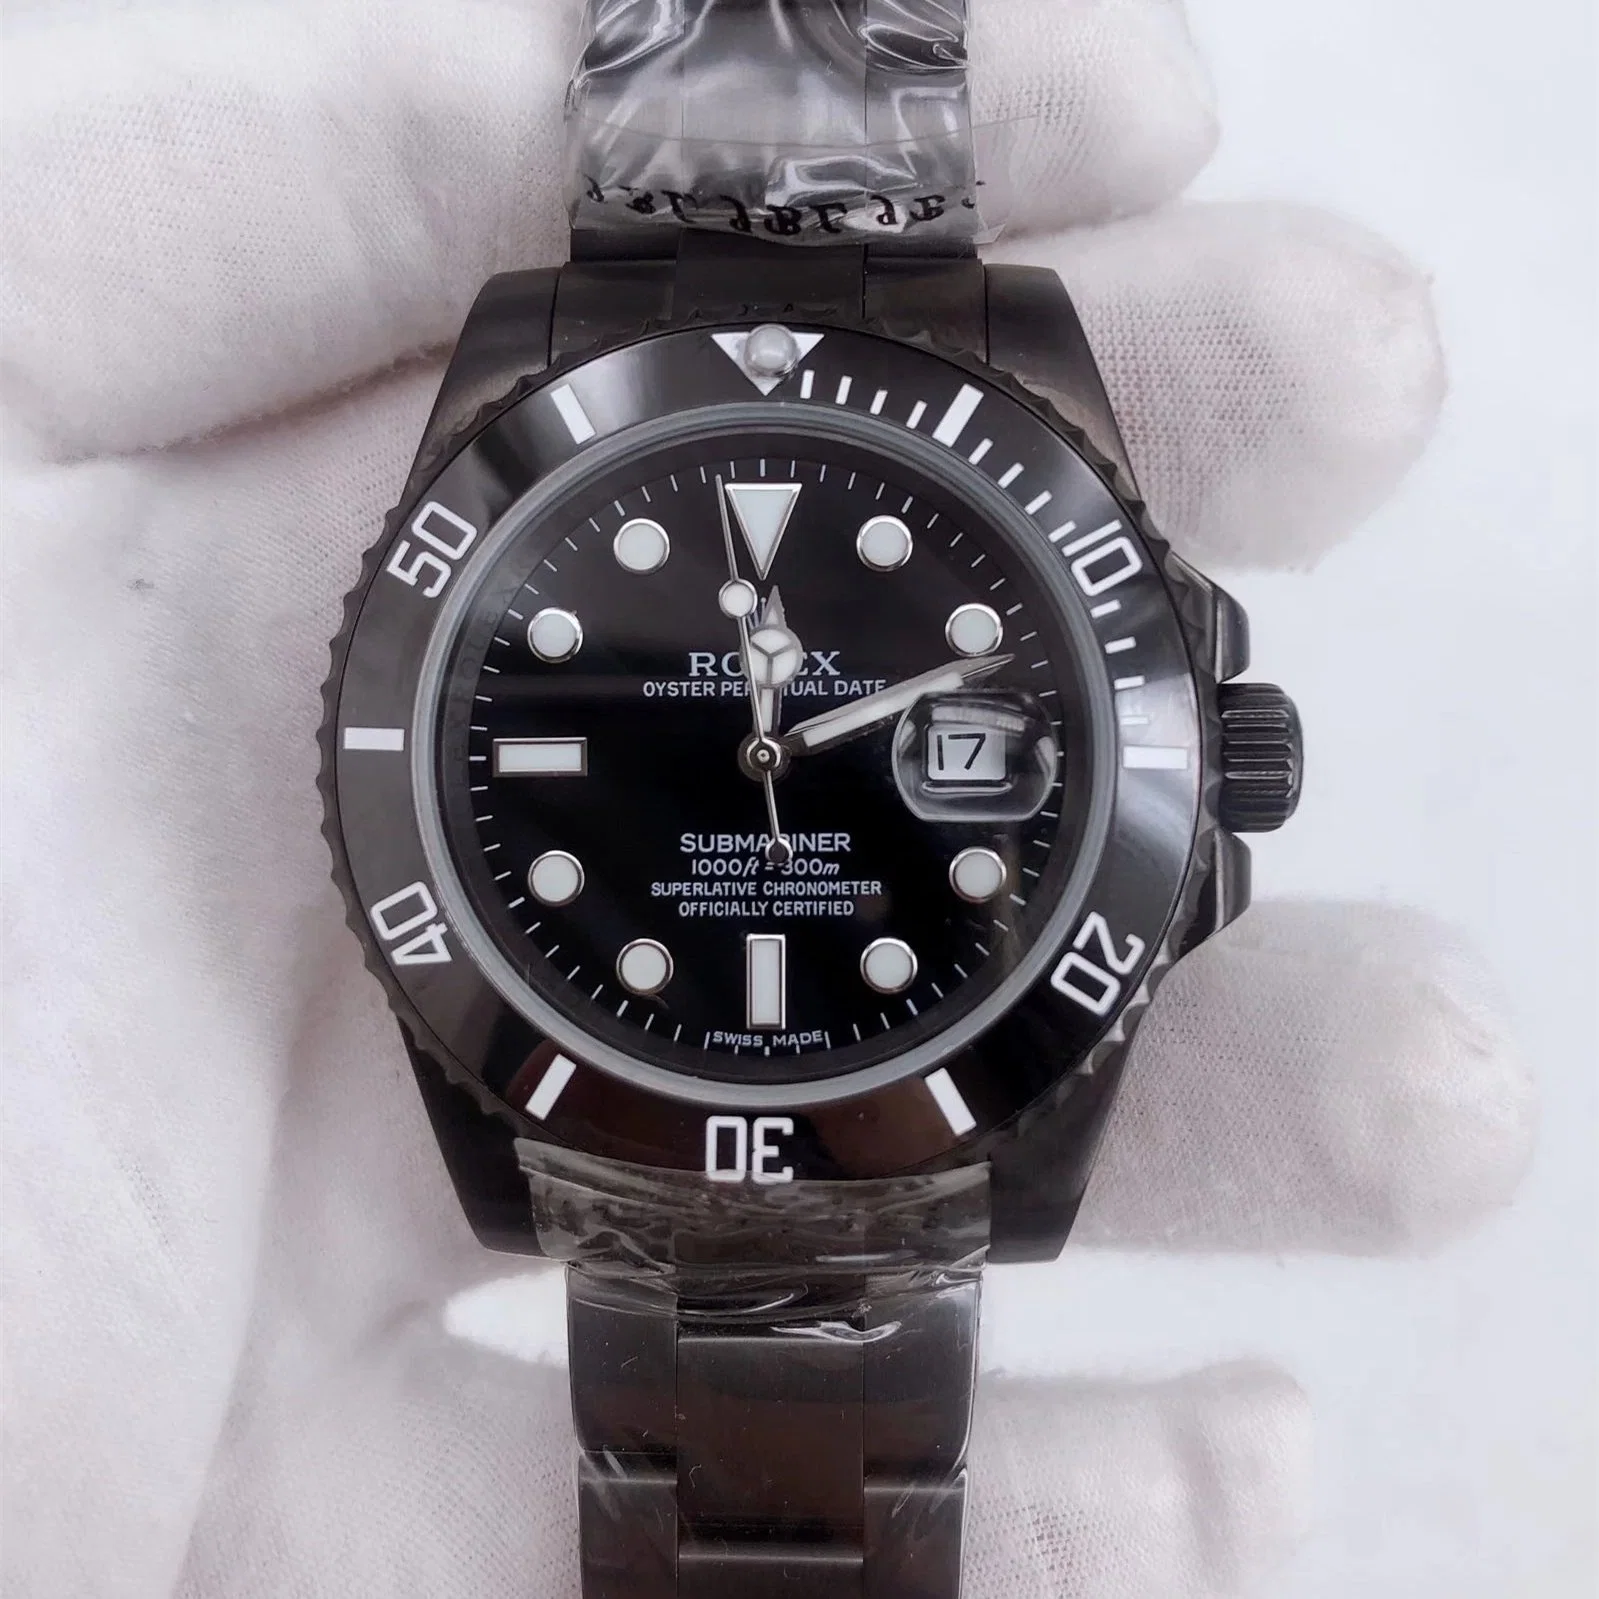 Acero inoxidable agua negra RO-Lex reloj Ghost reloj banda analógica Reloj de muñeca para hombres